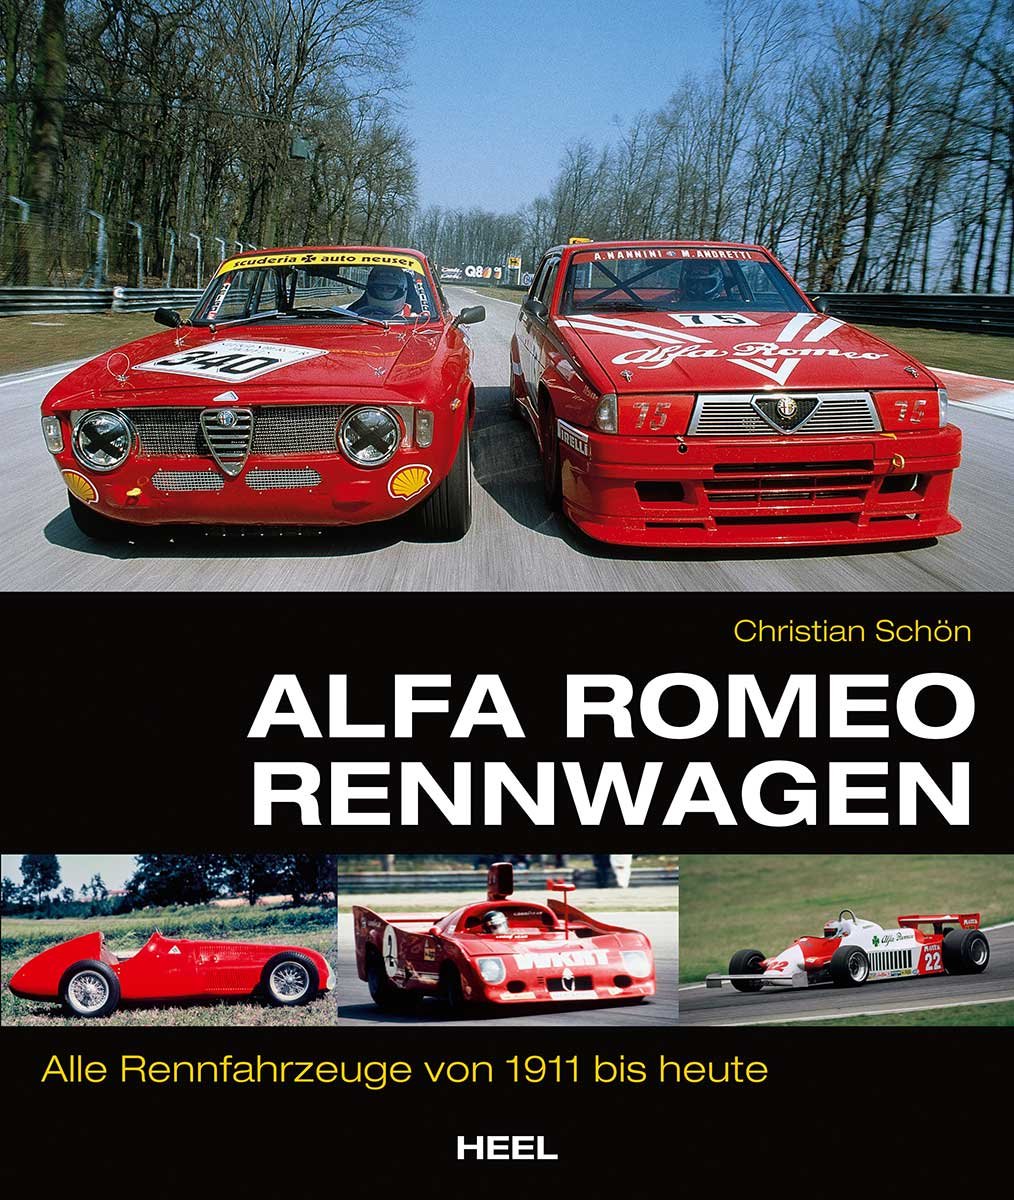 Alfa Romeo Rennwagen